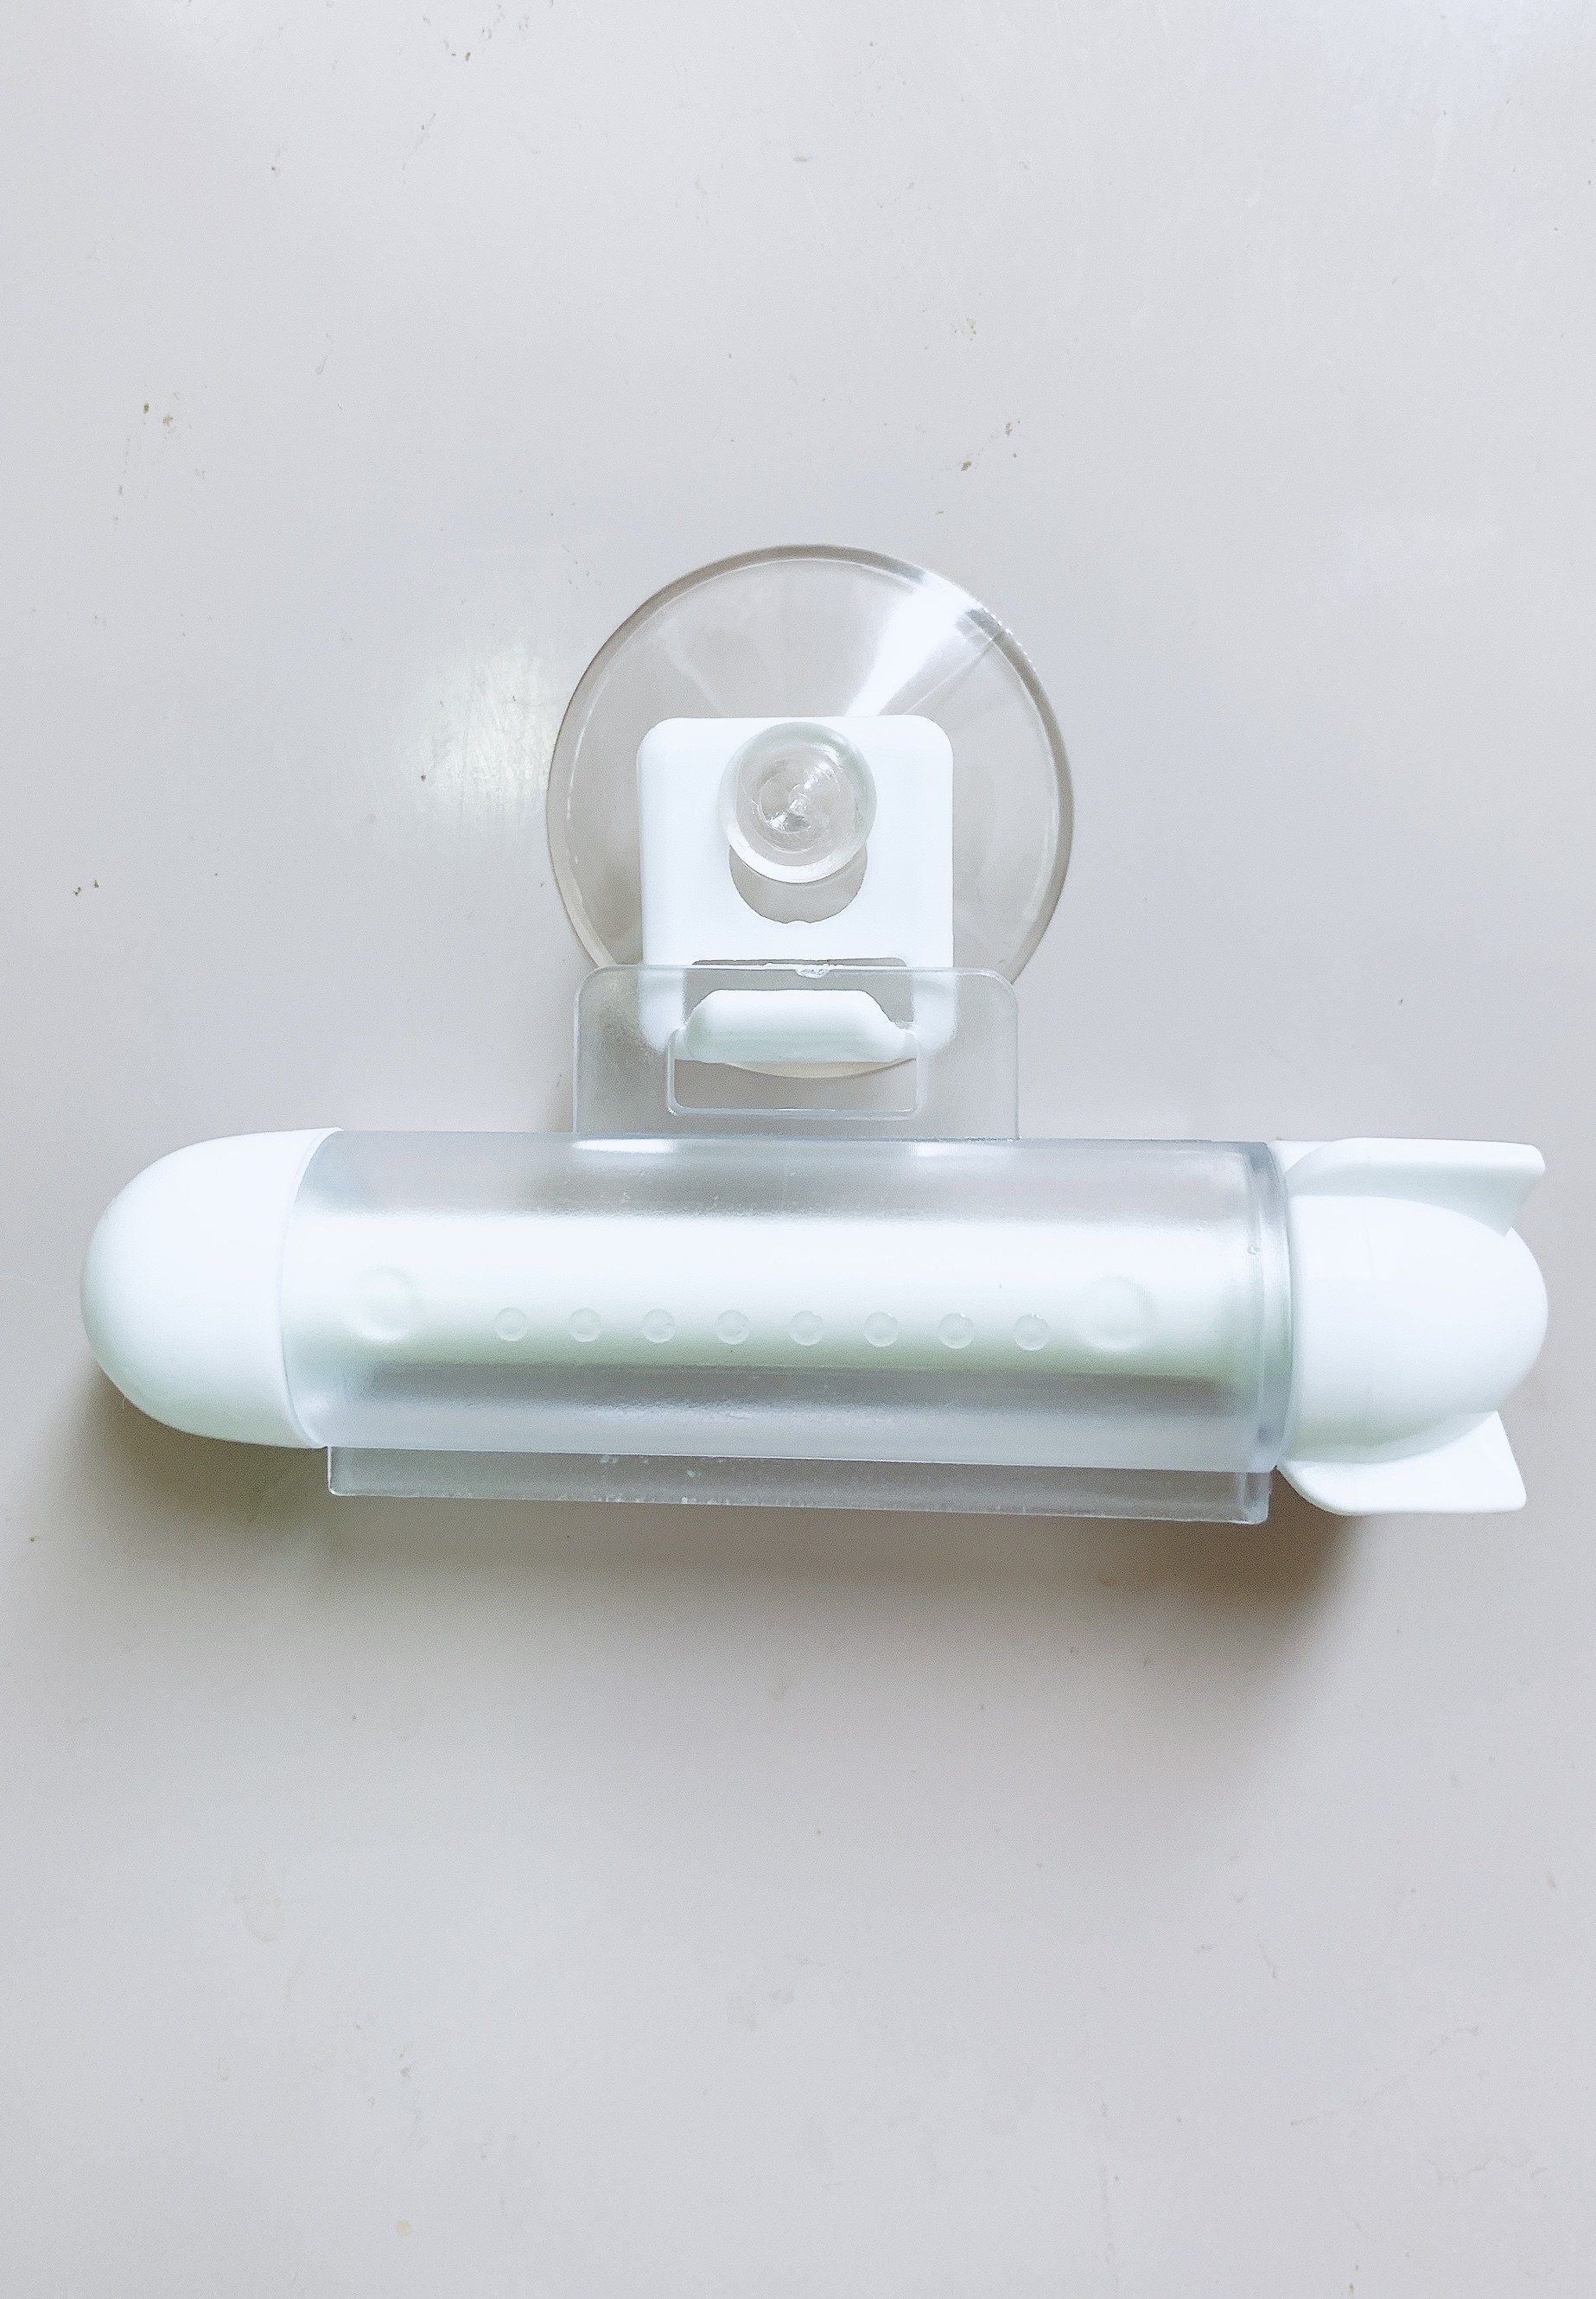 DAISO（ダイソー）の便利グッズ「チューブ絞り」歯磨き粉を使い切る最強アイテム